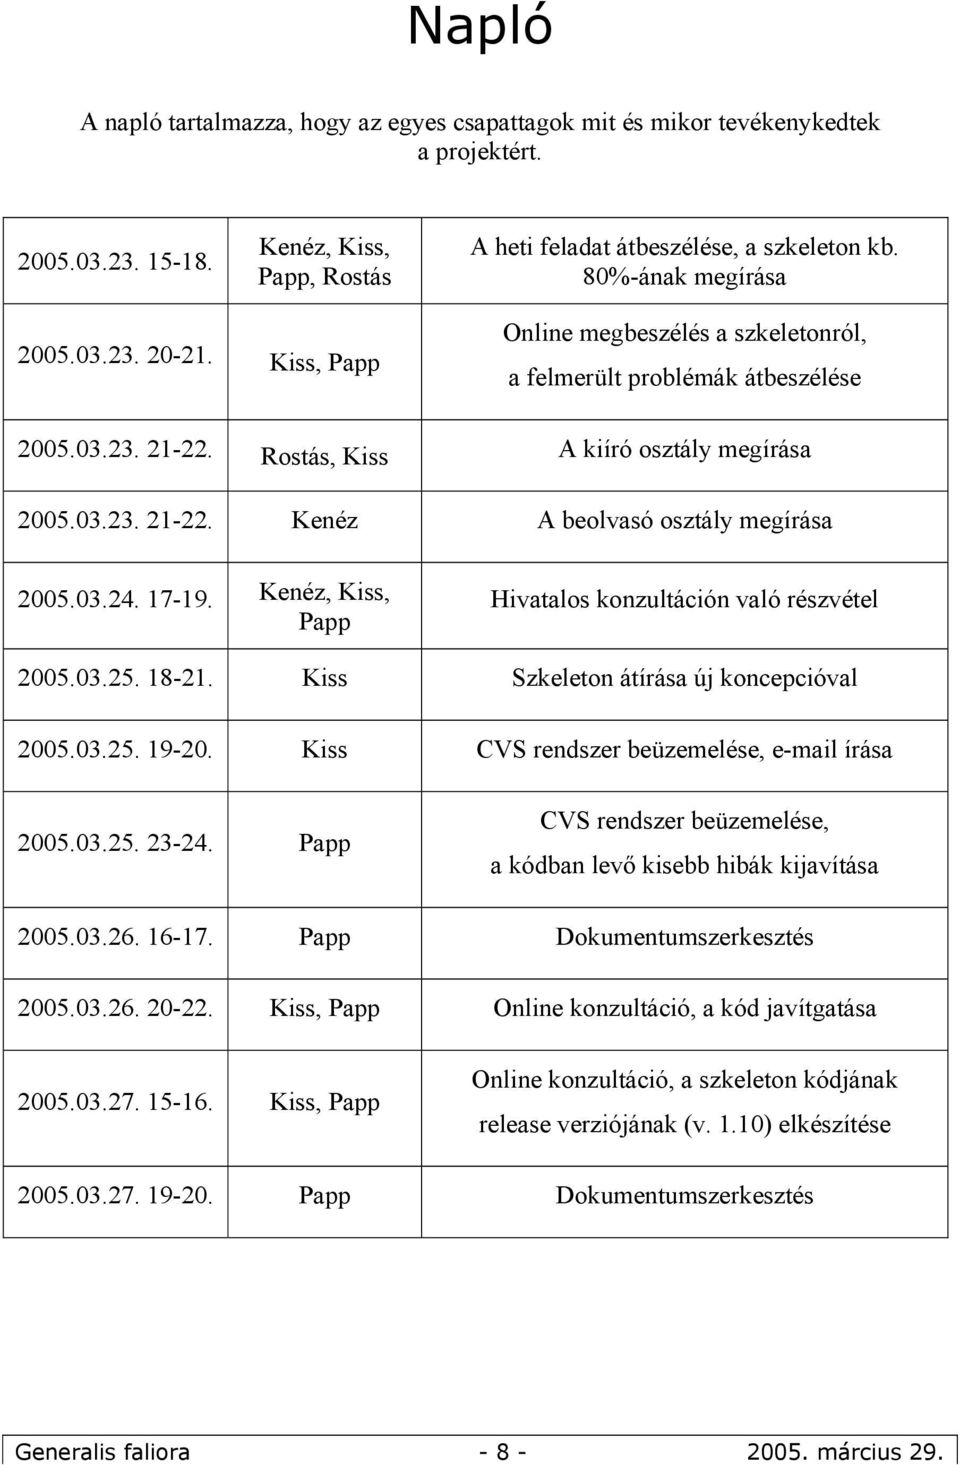 03.24. 17-19. Kenéz, Kiss, Papp Hivatalos konzultáción való részvétel 2005.03.25. 18-21. Kiss Szkeleton átírása új koncepcióval 2005.03.25. 19-20. Kiss CVS rendszer beüzemelése, e-mail írása 2005.03.25. 23-24.